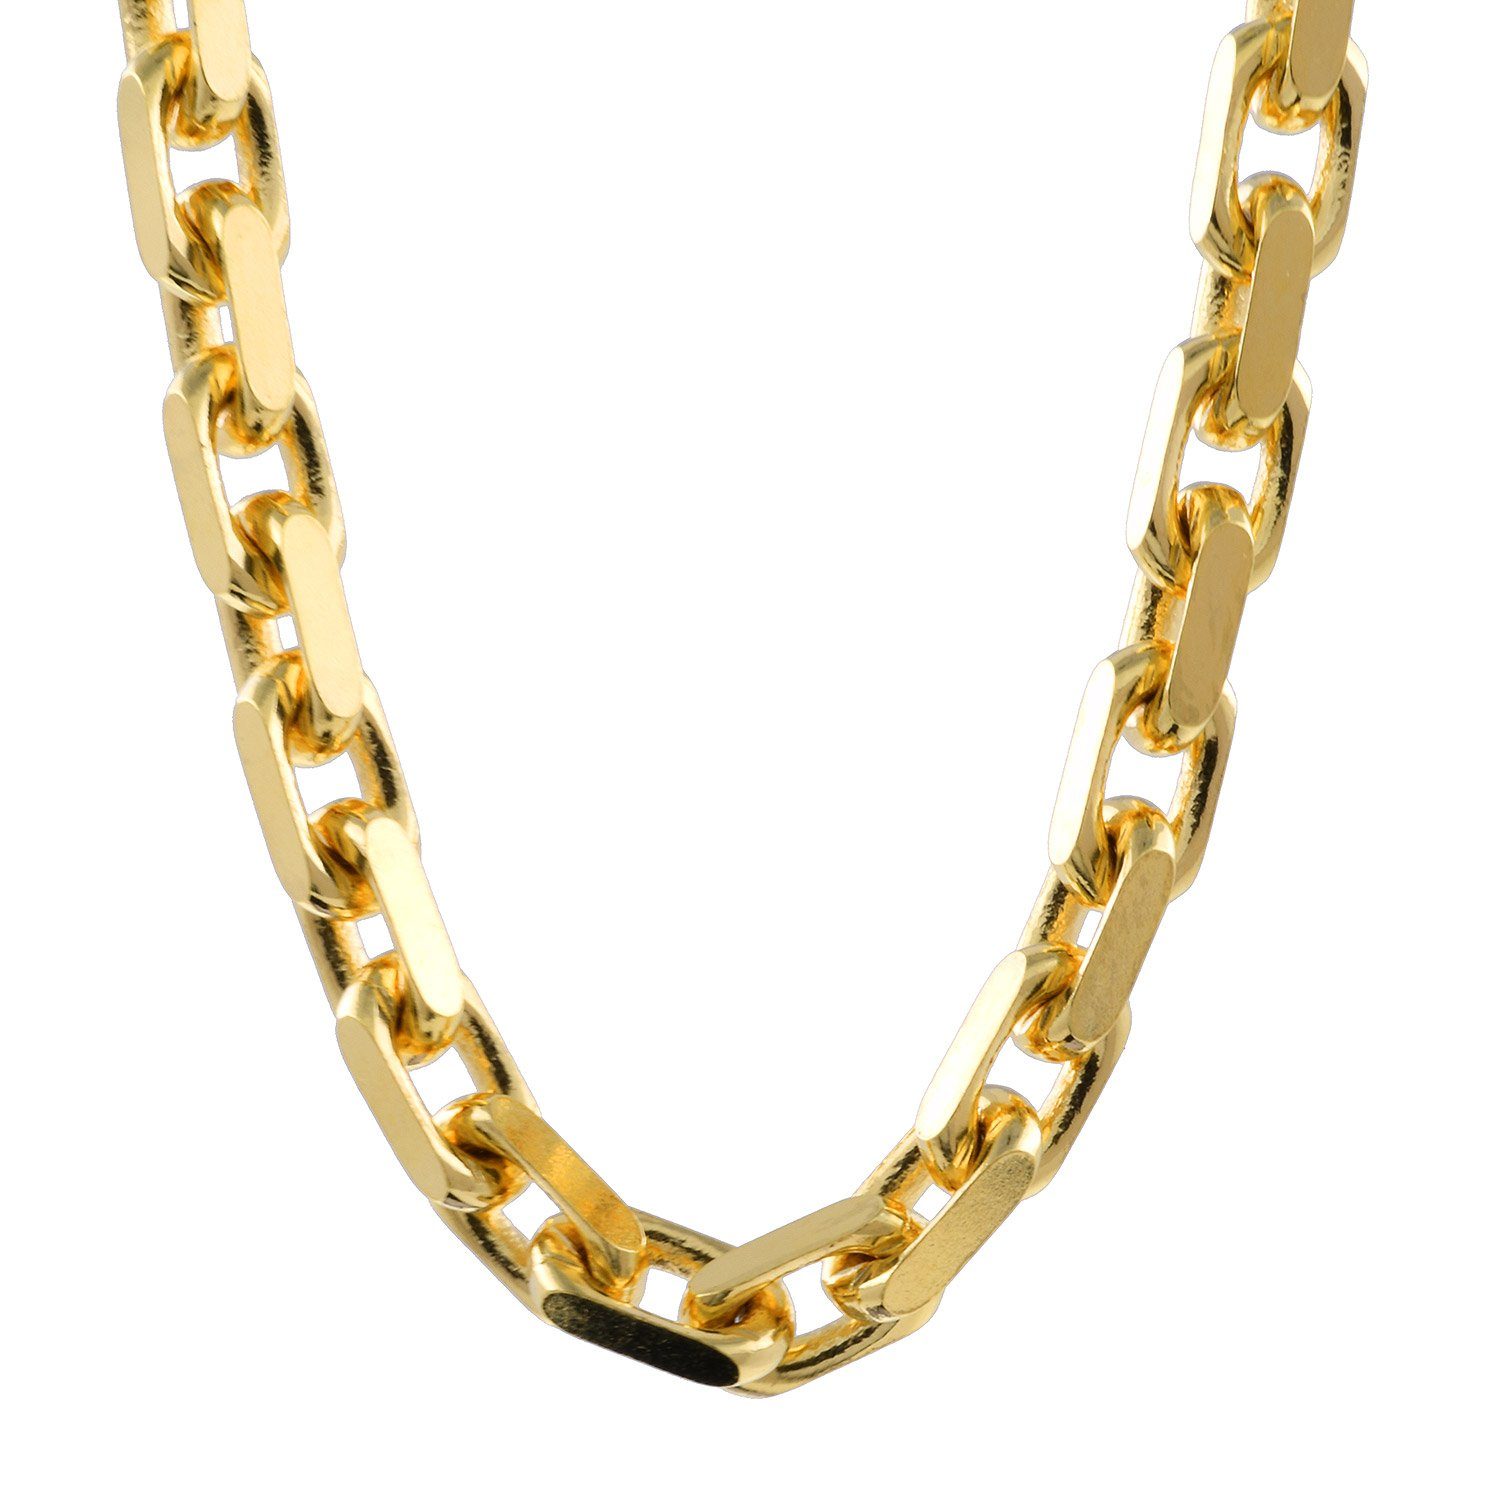 Juwelier - Made 45cm Kette Breite in HOPLO Karat Edle Germany, 750-18 diamantiert Qualität in 3,0mm Länge Goldkette Ankerkette - Gold,